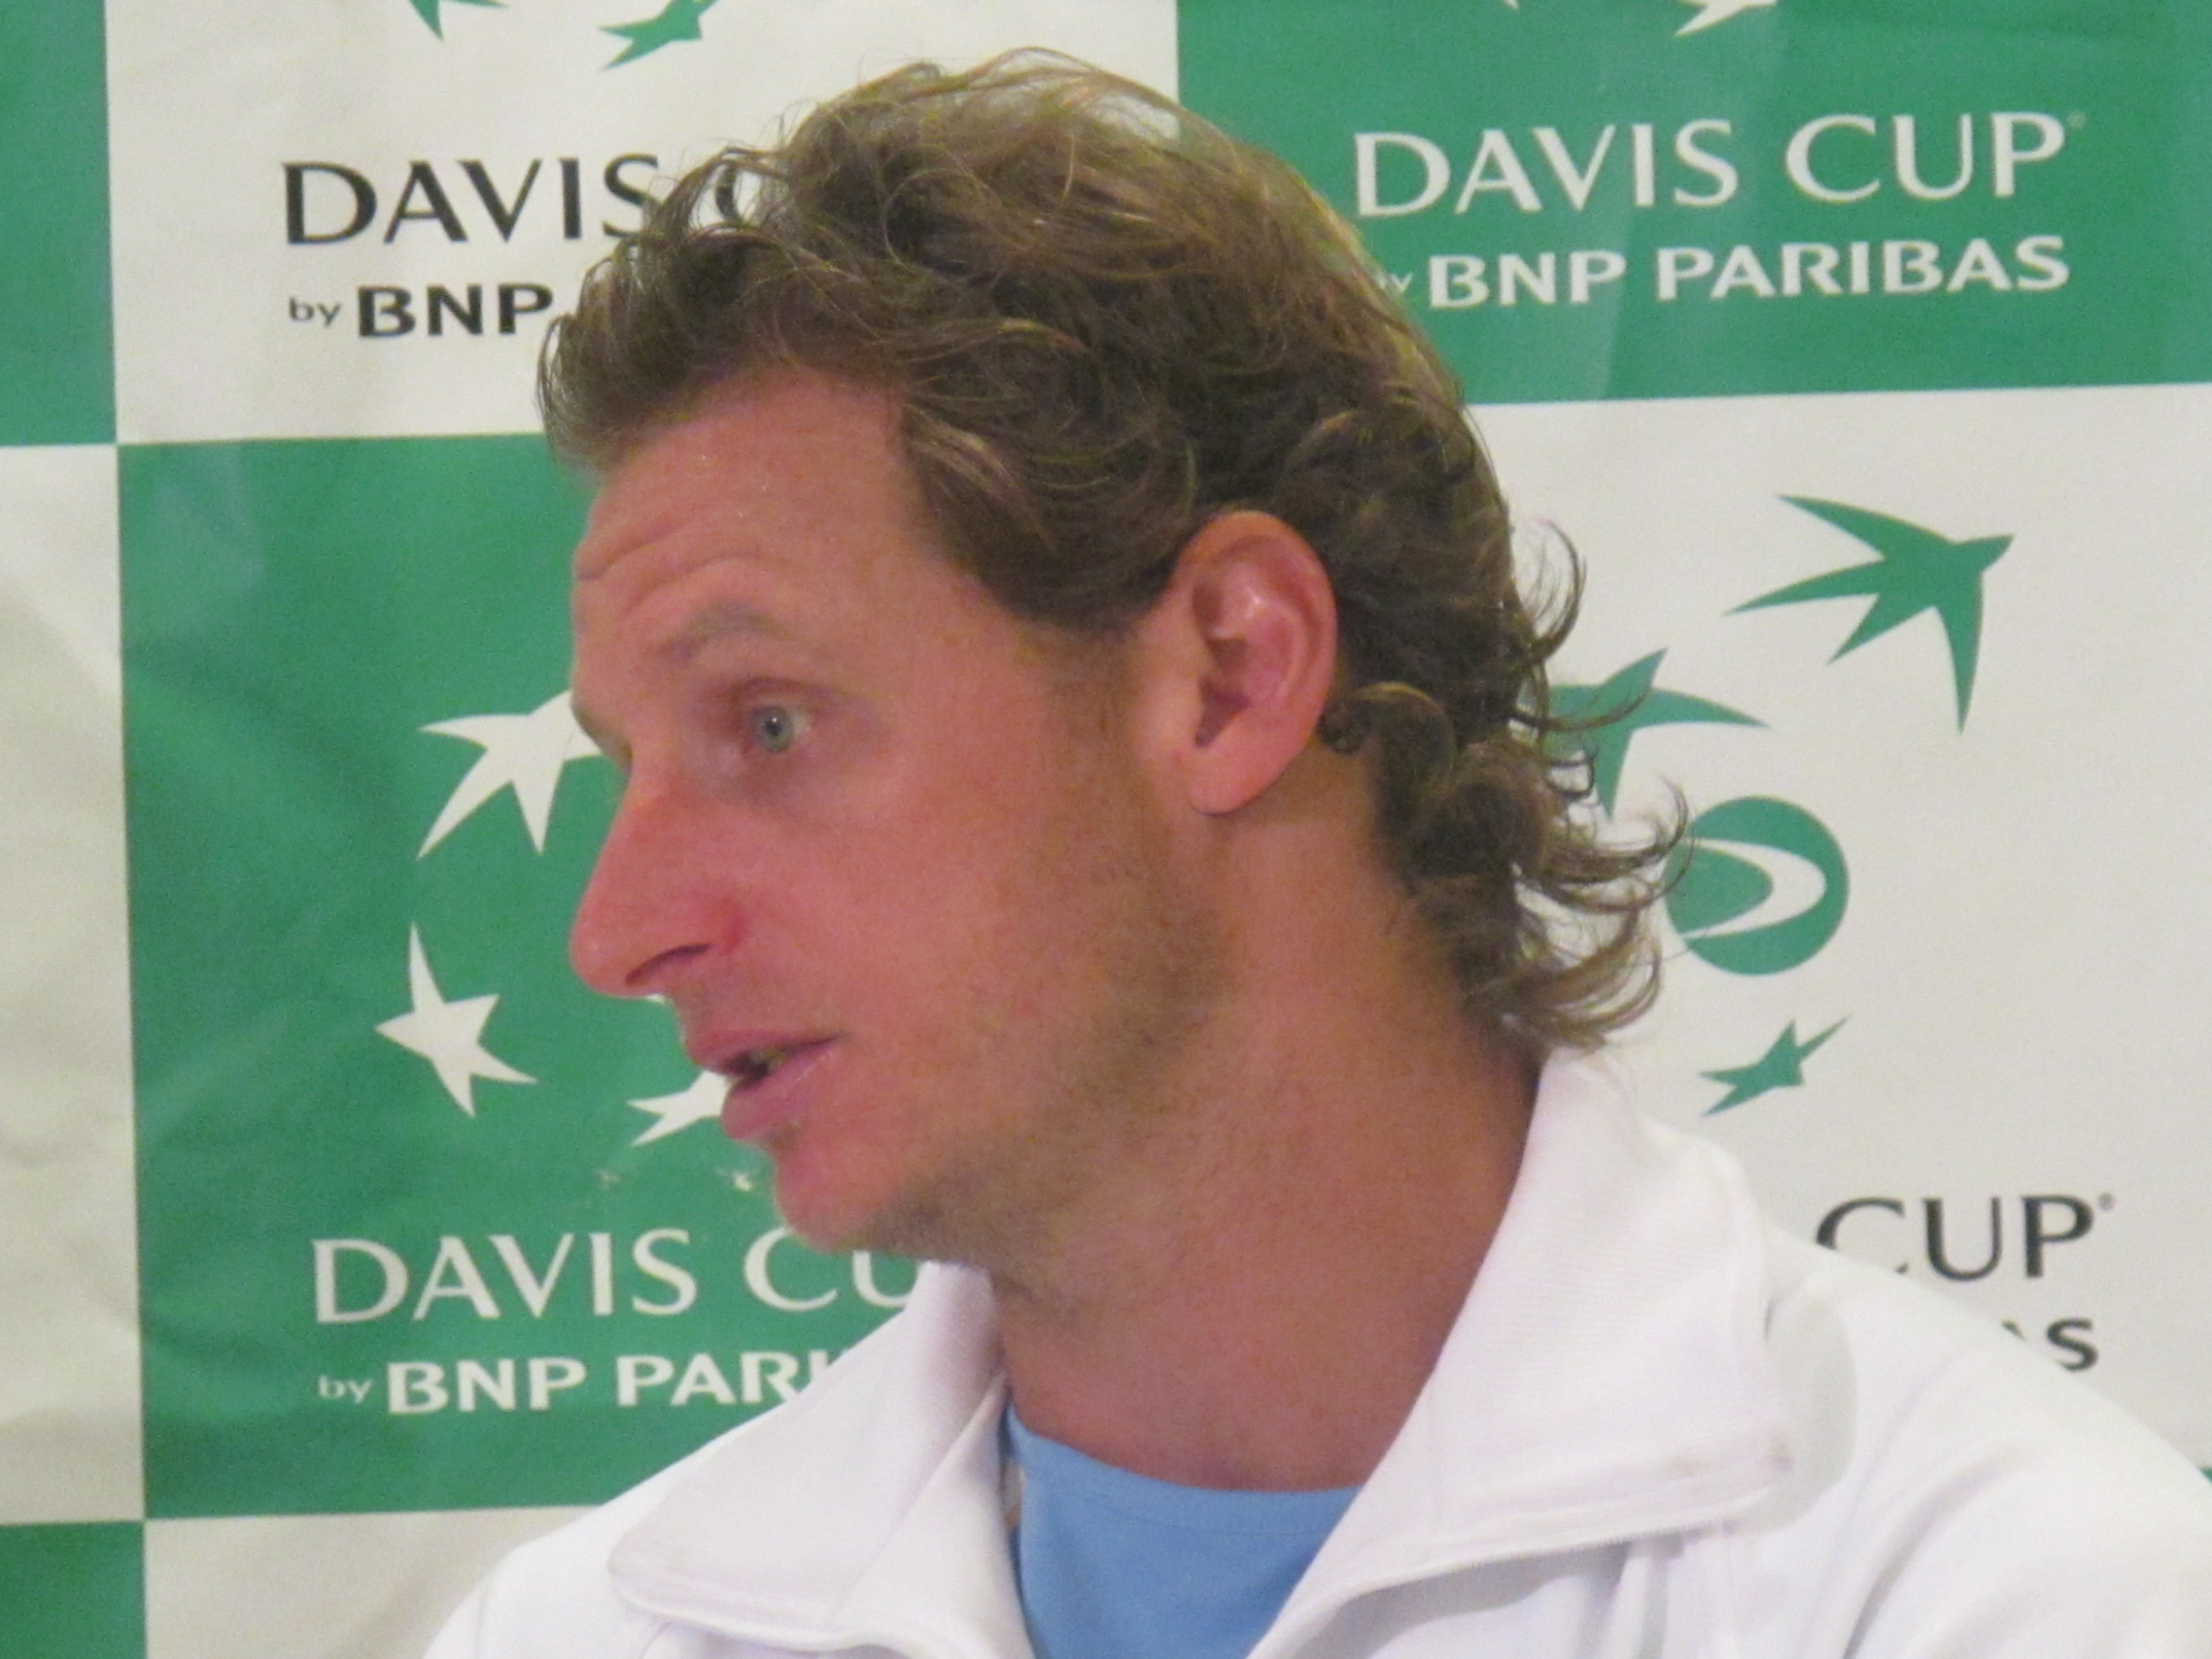 Davis Cup, argentina, David Nalbandian, Tennis, Sverige, Andreas Vinciguerra